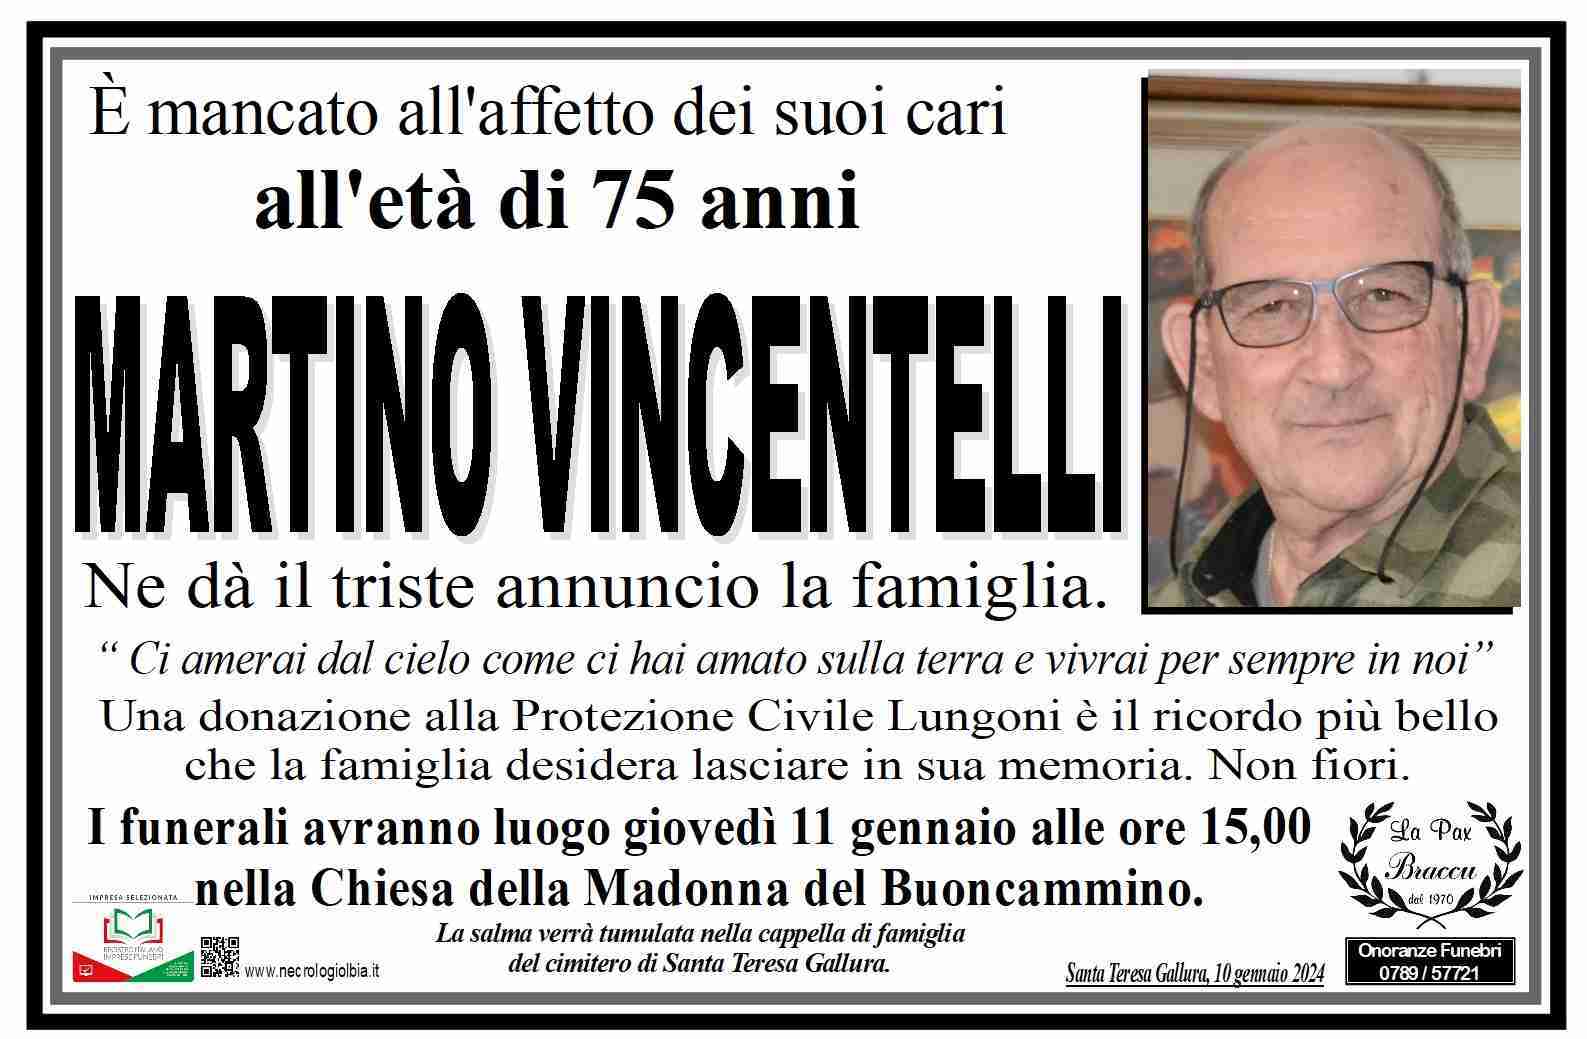 Martino Vincentelli